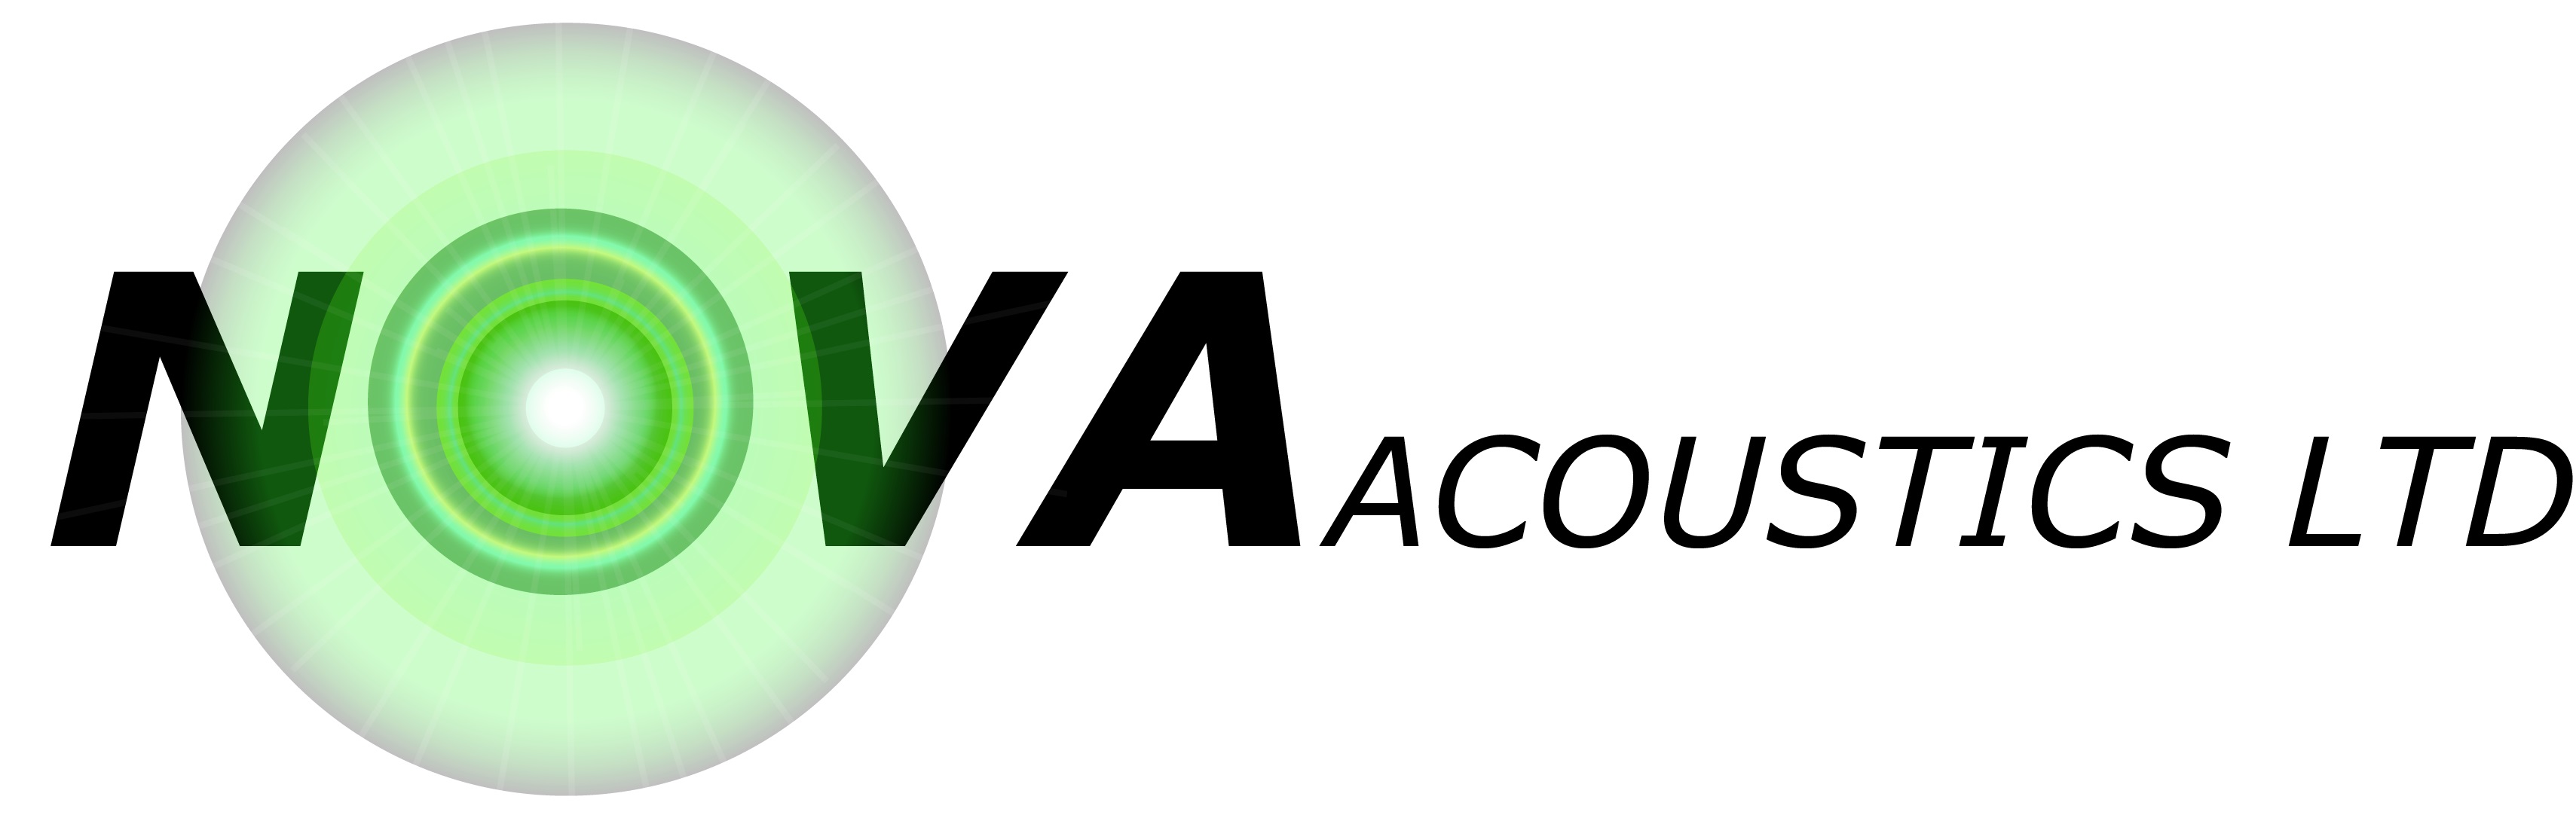 NOVA_logo